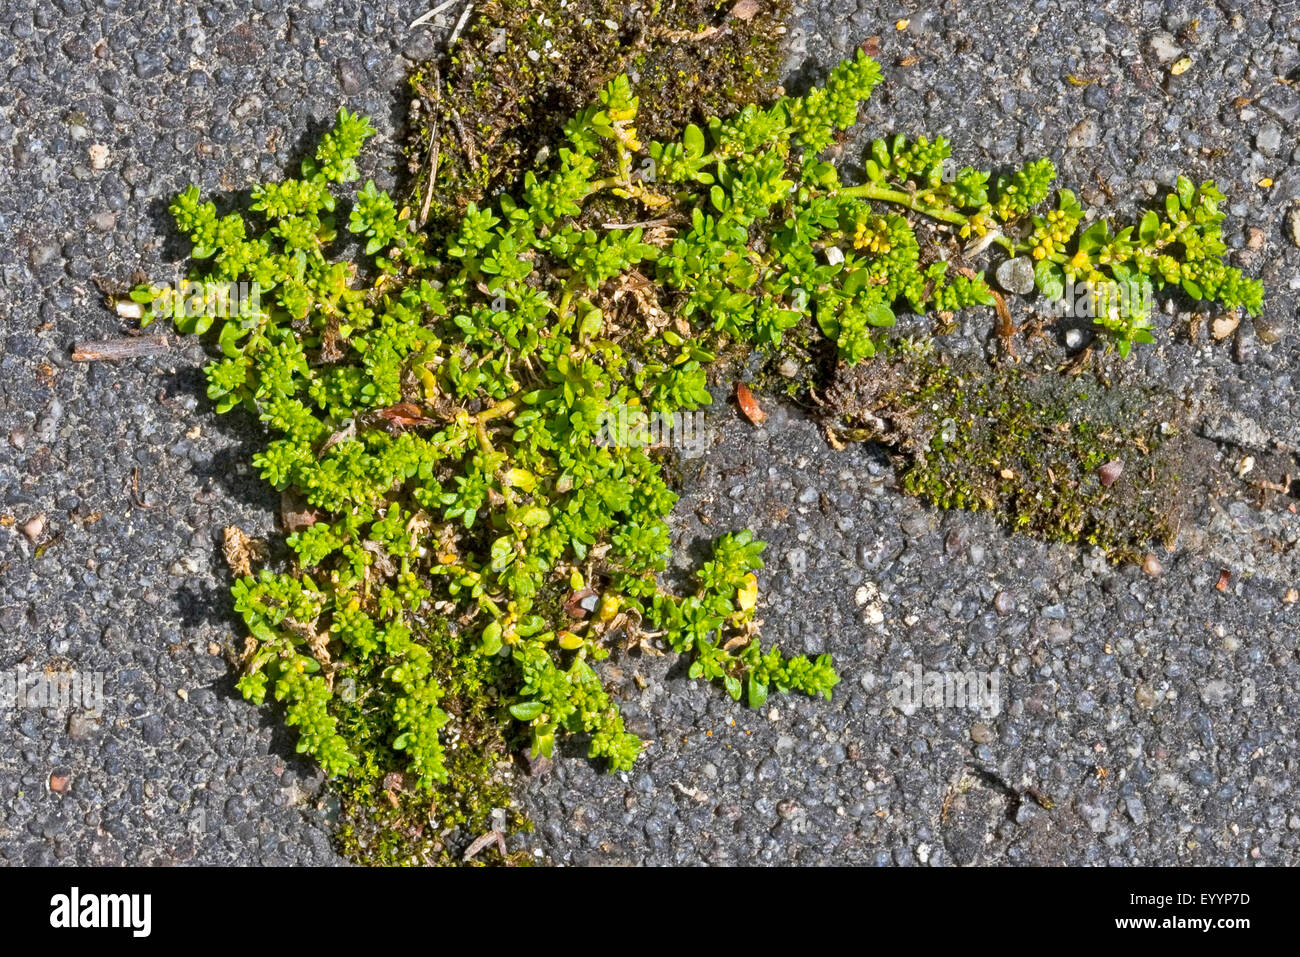 Burstwort rupturewort lisse, douce (Herniaria glabra), sur un trottoir, Allemagne Banque D'Images